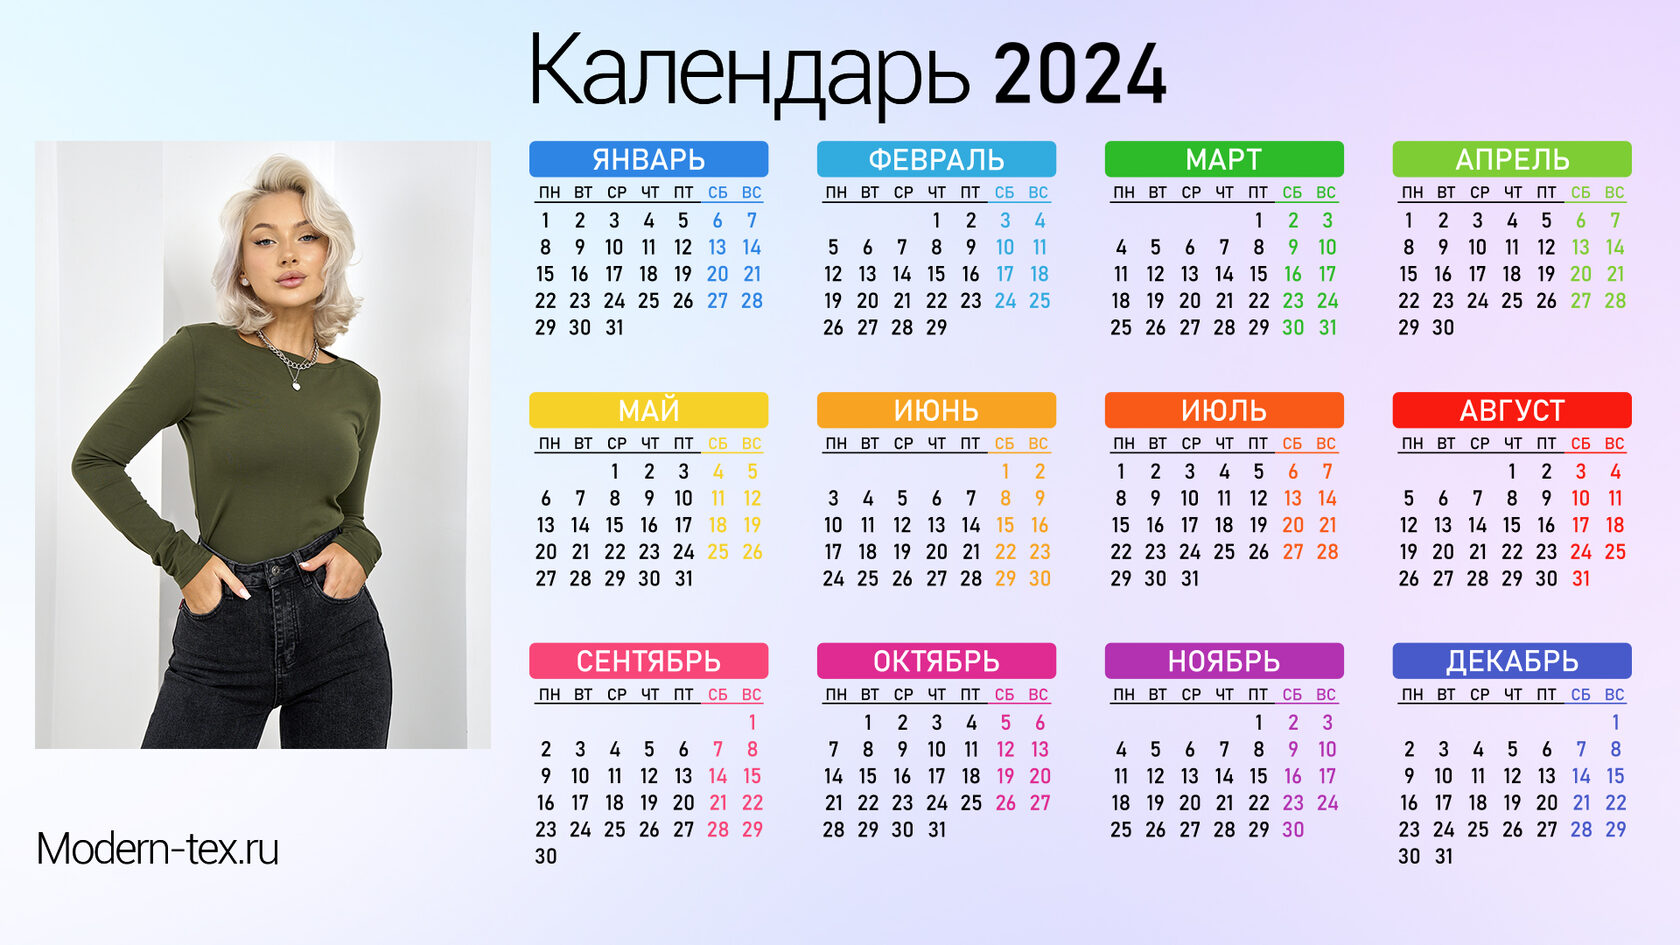 Выходные в марте 2024 производственный календарь. Производственный календарь 2024. Производственный 2024 календарь с праздниками. Календарь на 2024 год с праздниками и выходными производственный. Календарь февраль 2024.